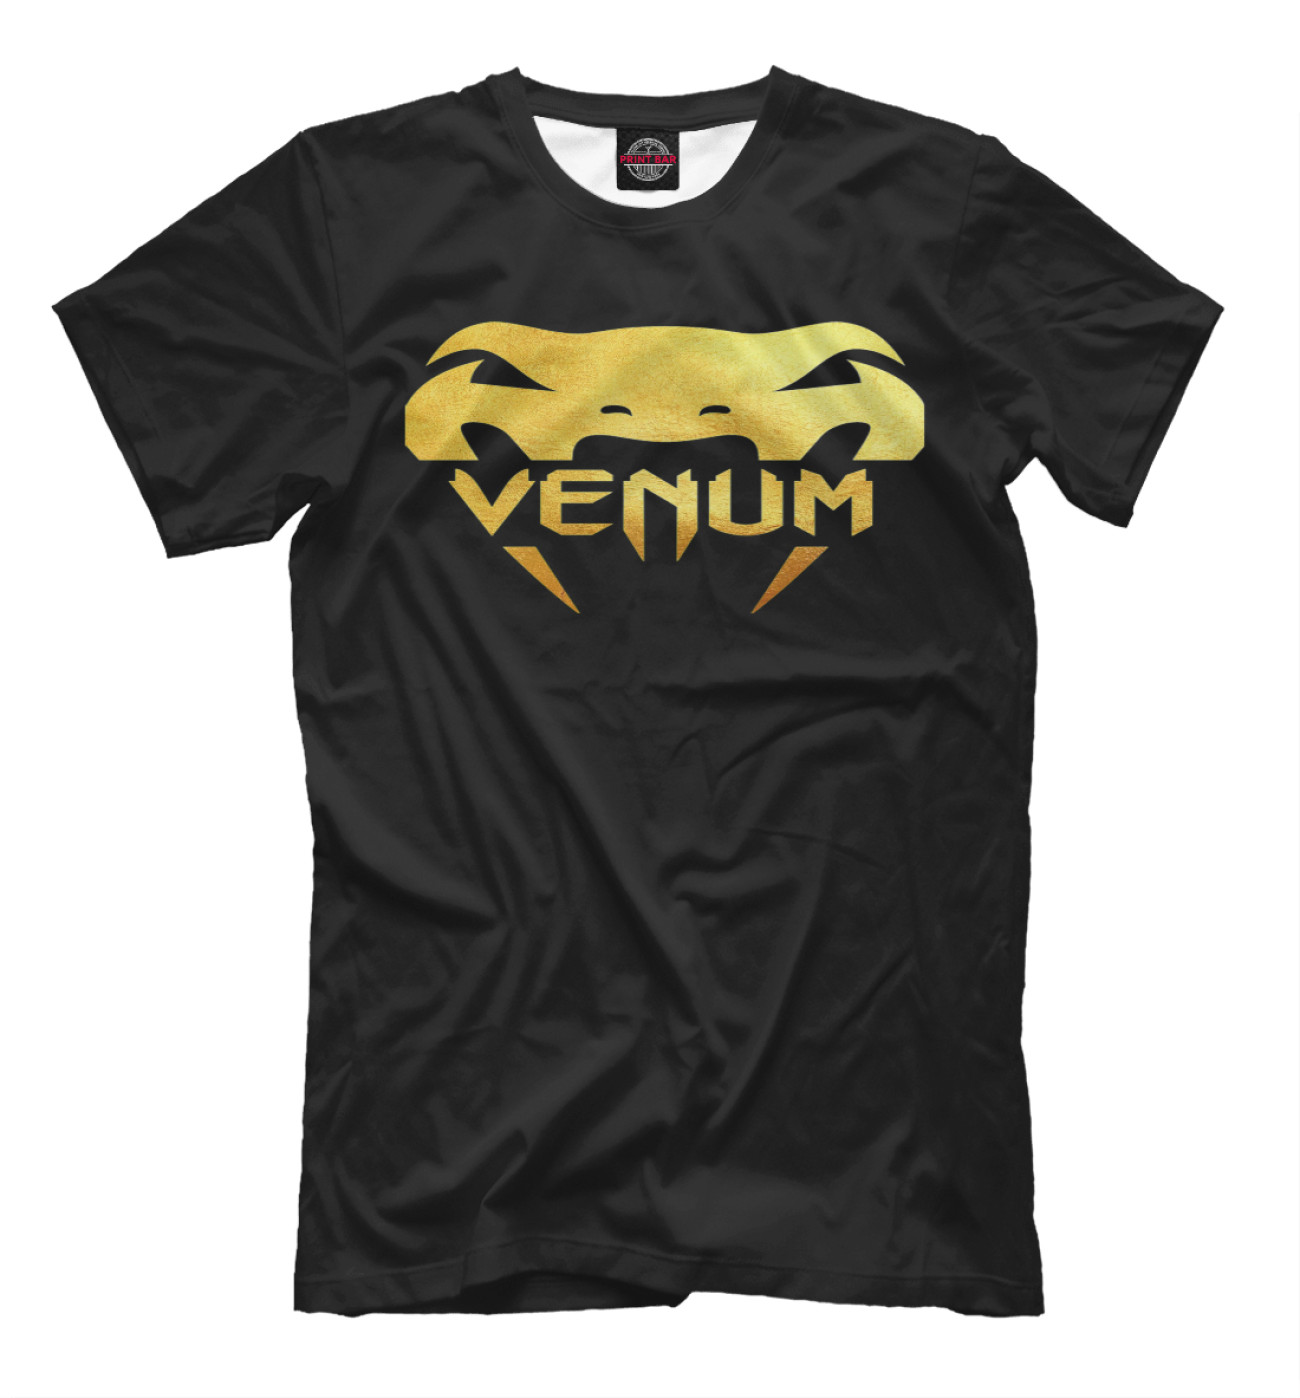 Мужская Футболка Venum Gold, артикул: MNU-346963-fut-2